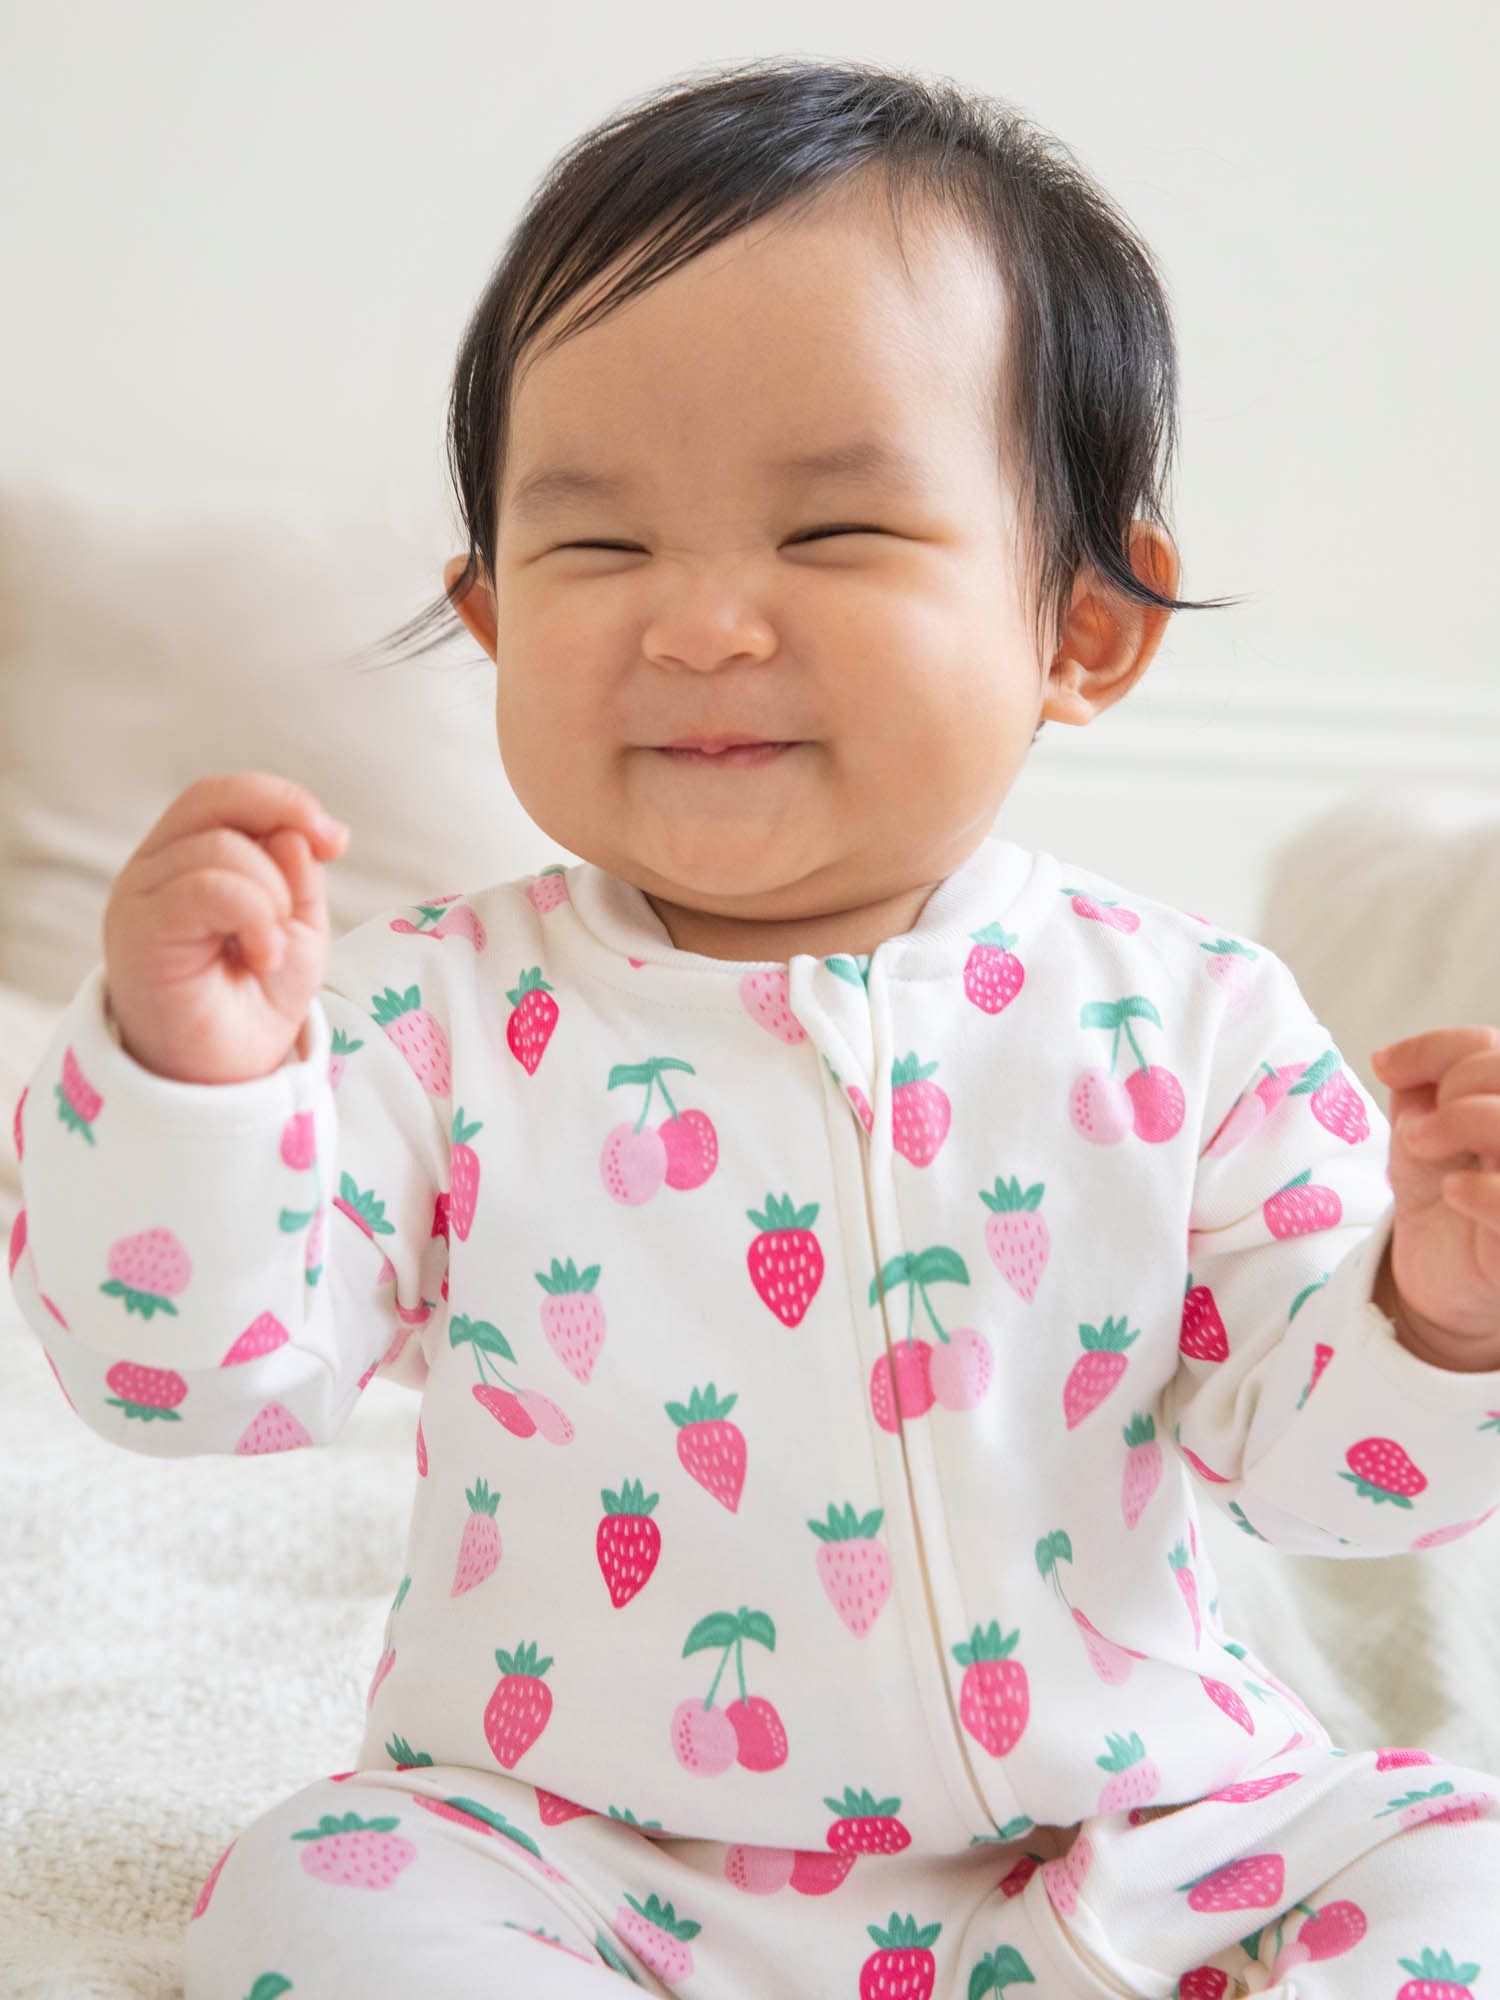 JoJo Maman Bébé Baby Fruit Zip Front Sleepsuit, Cream/Multi, 3-6 months